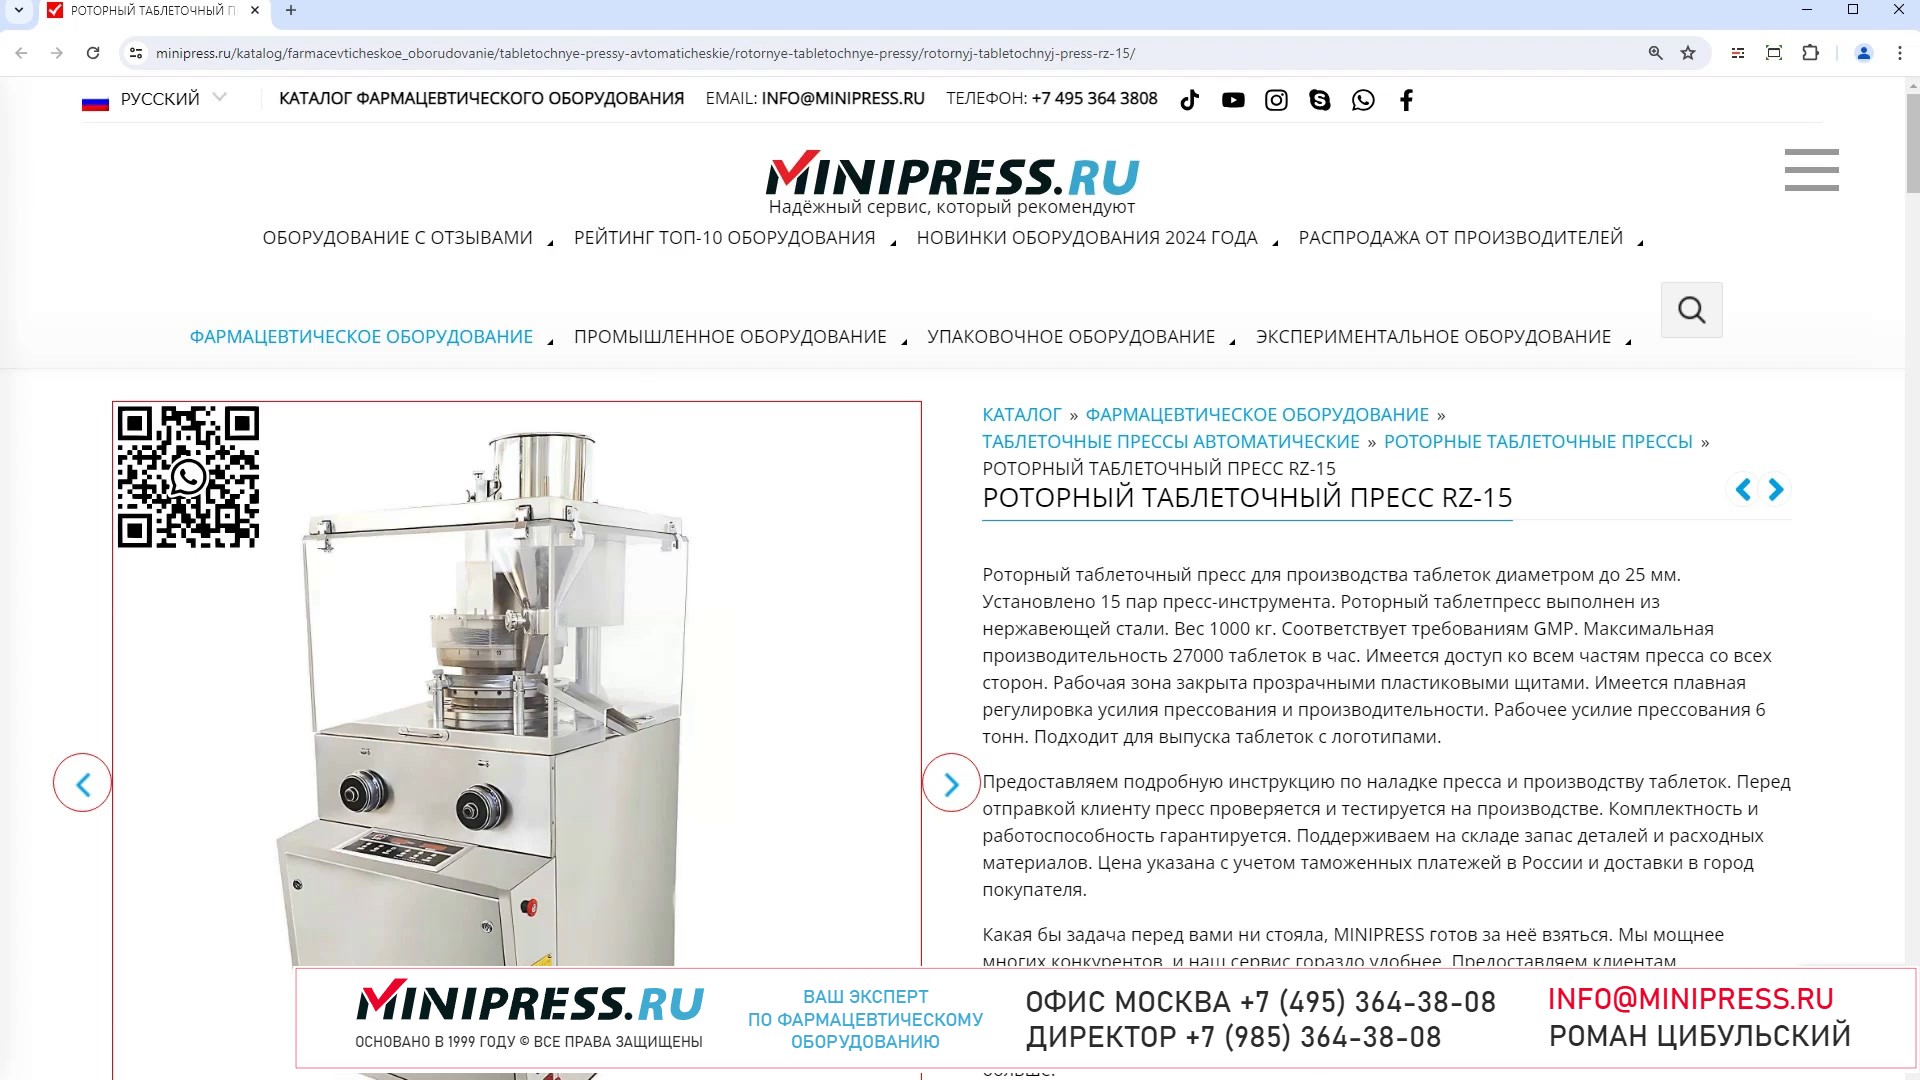 Minipress.ru Роторный таблеточный пресс RZ-15